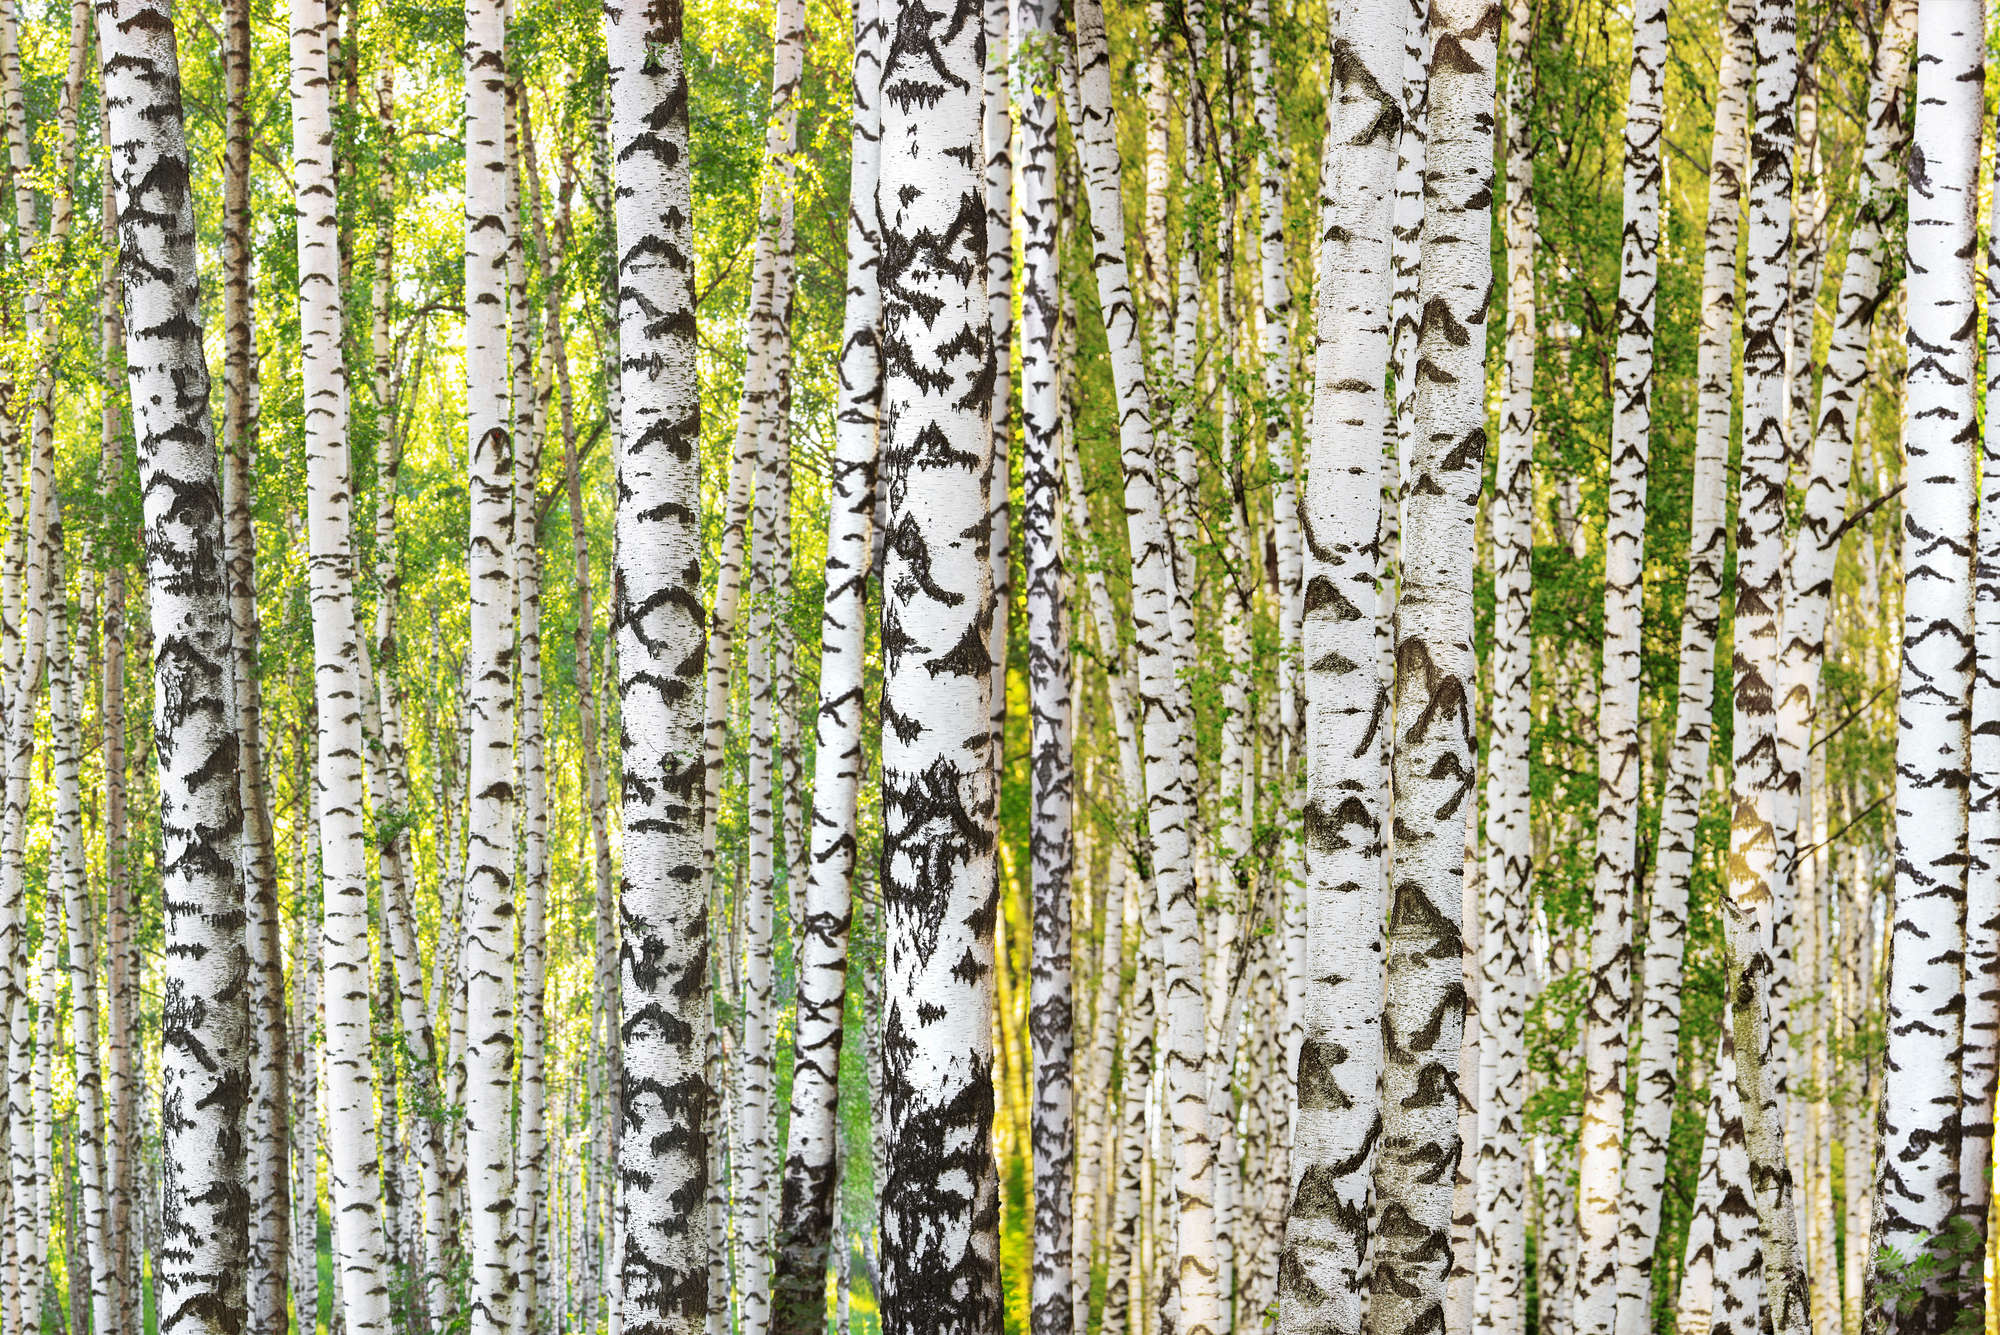             Papel pintado de bosque de abedules con motivo de tronco de árbol sobre vellón liso de nácar
        